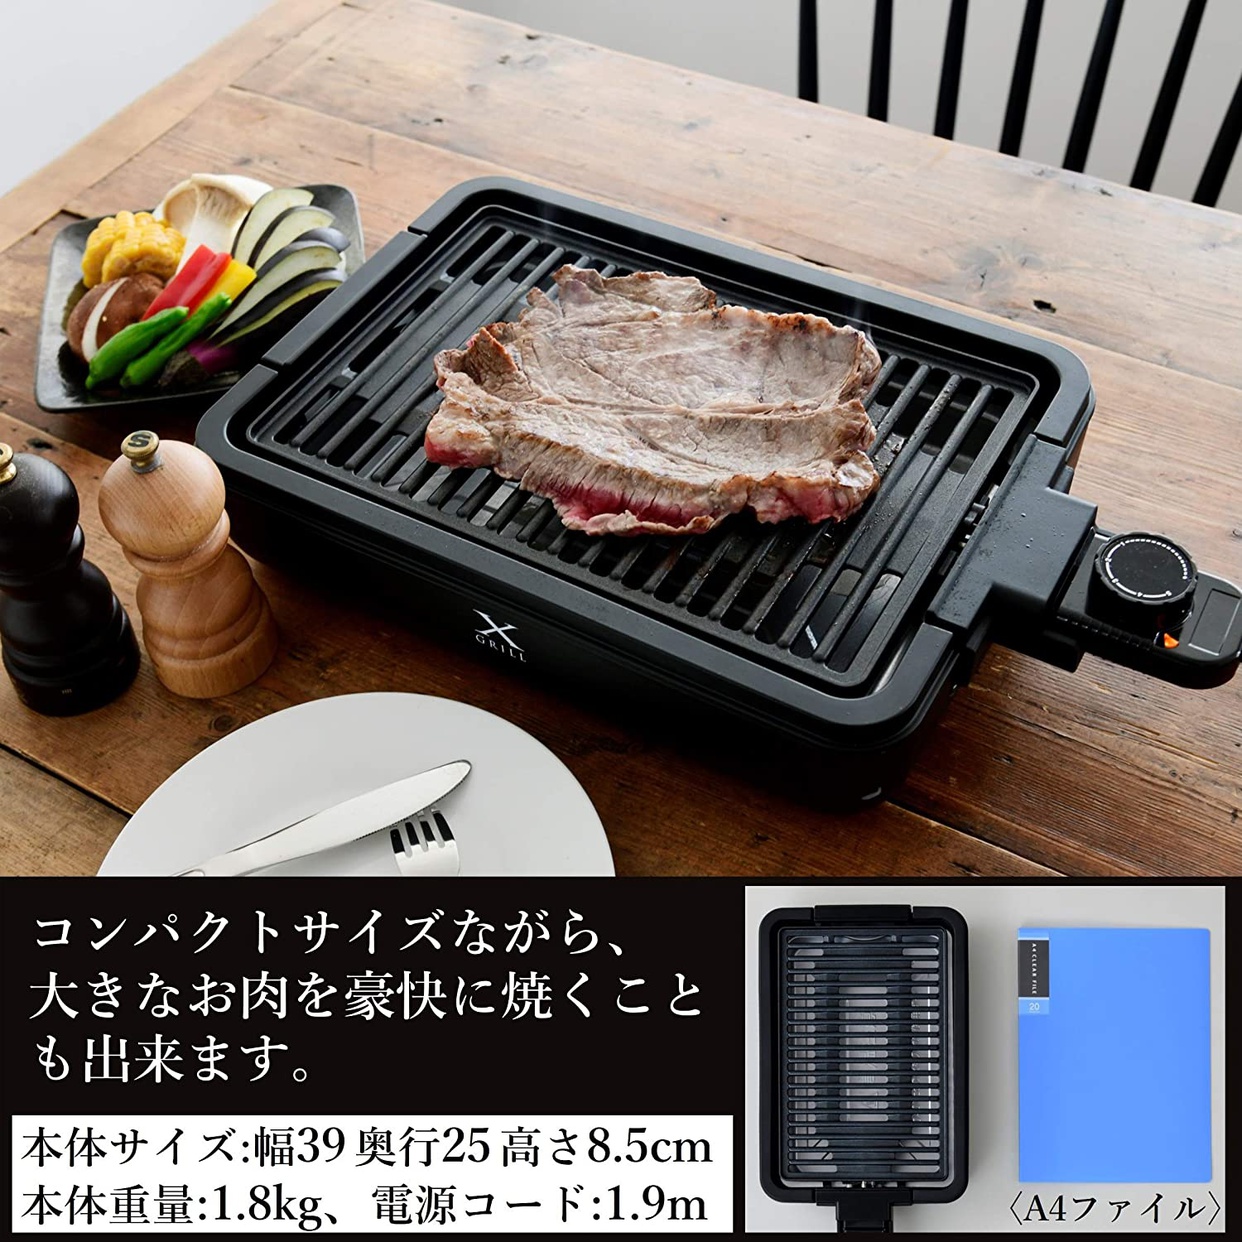 山善(YAMAZEN) 焼き肉グリル YGMA-X100の商品画像サムネ5 